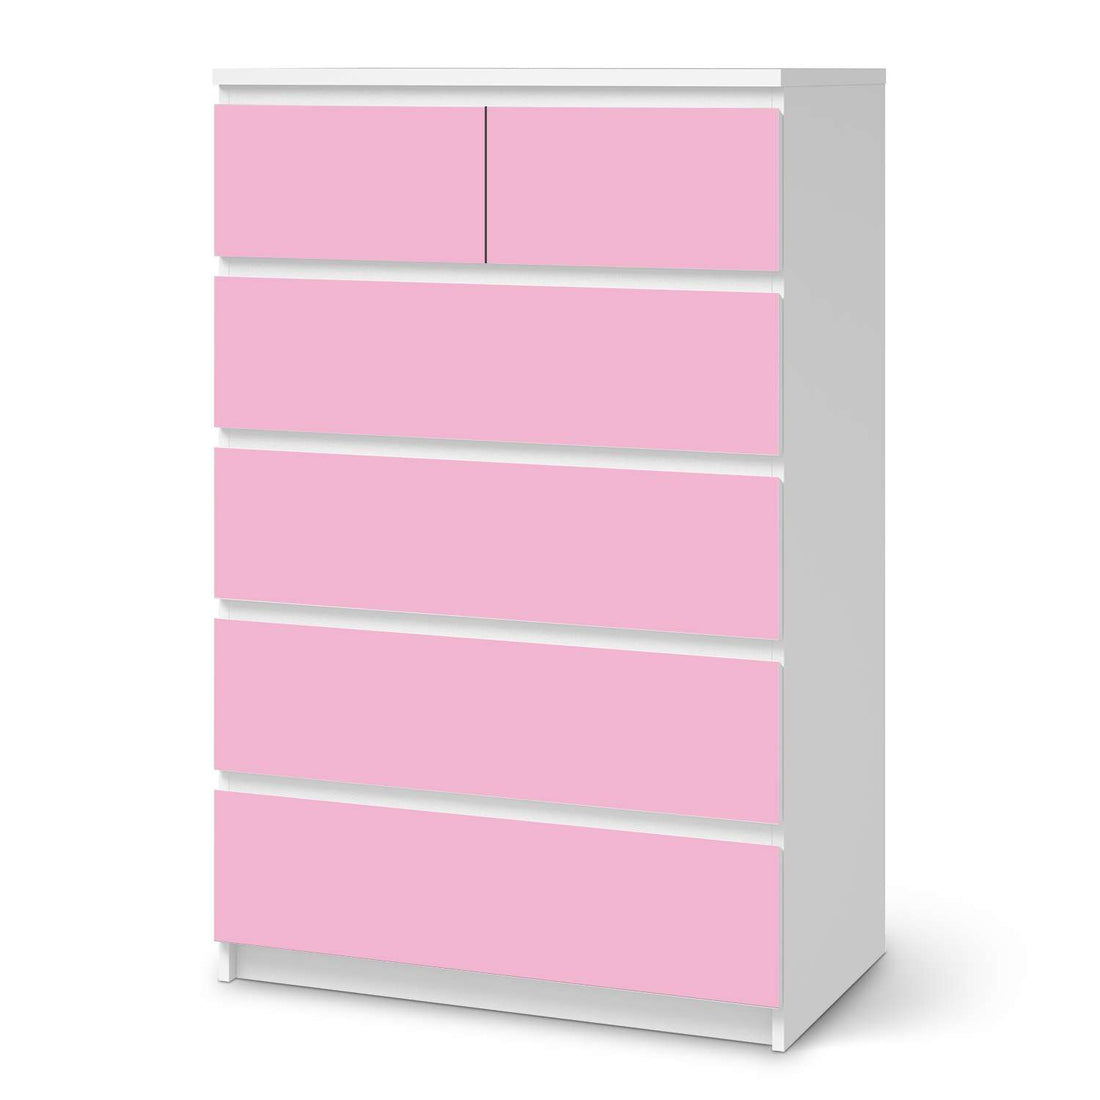 Möbel Klebefolie Pink Light - IKEA Malm Kommode 6 Schubladen (hoch)  - weiss